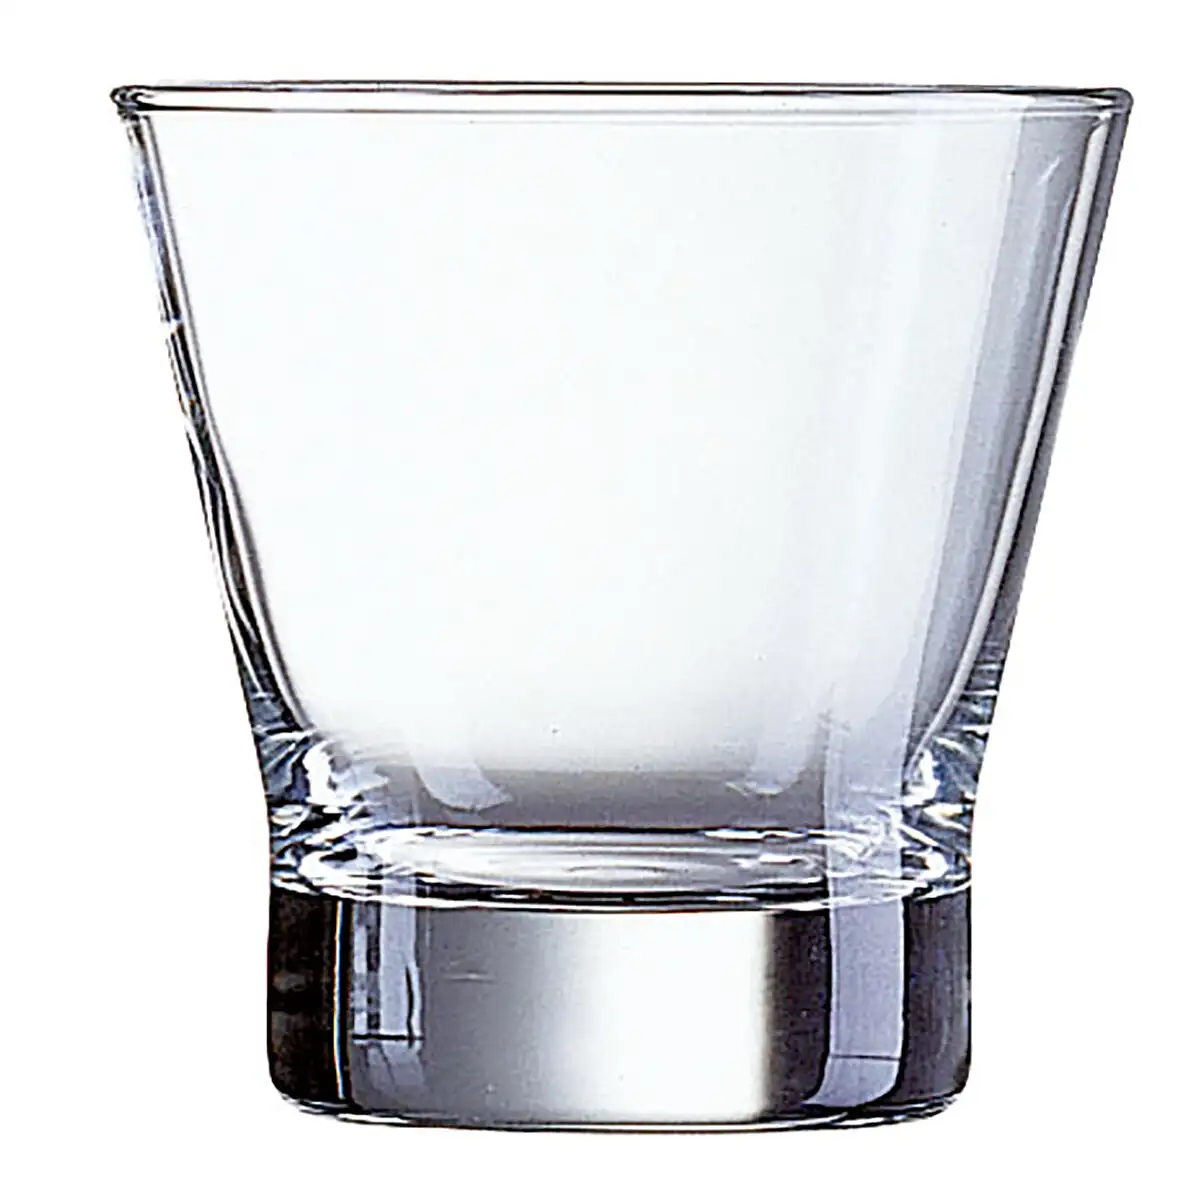 Set de verres arcoroc shetland transparent verre 12 unites 250 ml _3377. Entrez dans l'Univers de DIAYTAR SENEGAL - Où Choisir est un Plaisir. Explorez notre gamme variée et trouvez des articles qui parlent à votre cœur et à votre style.